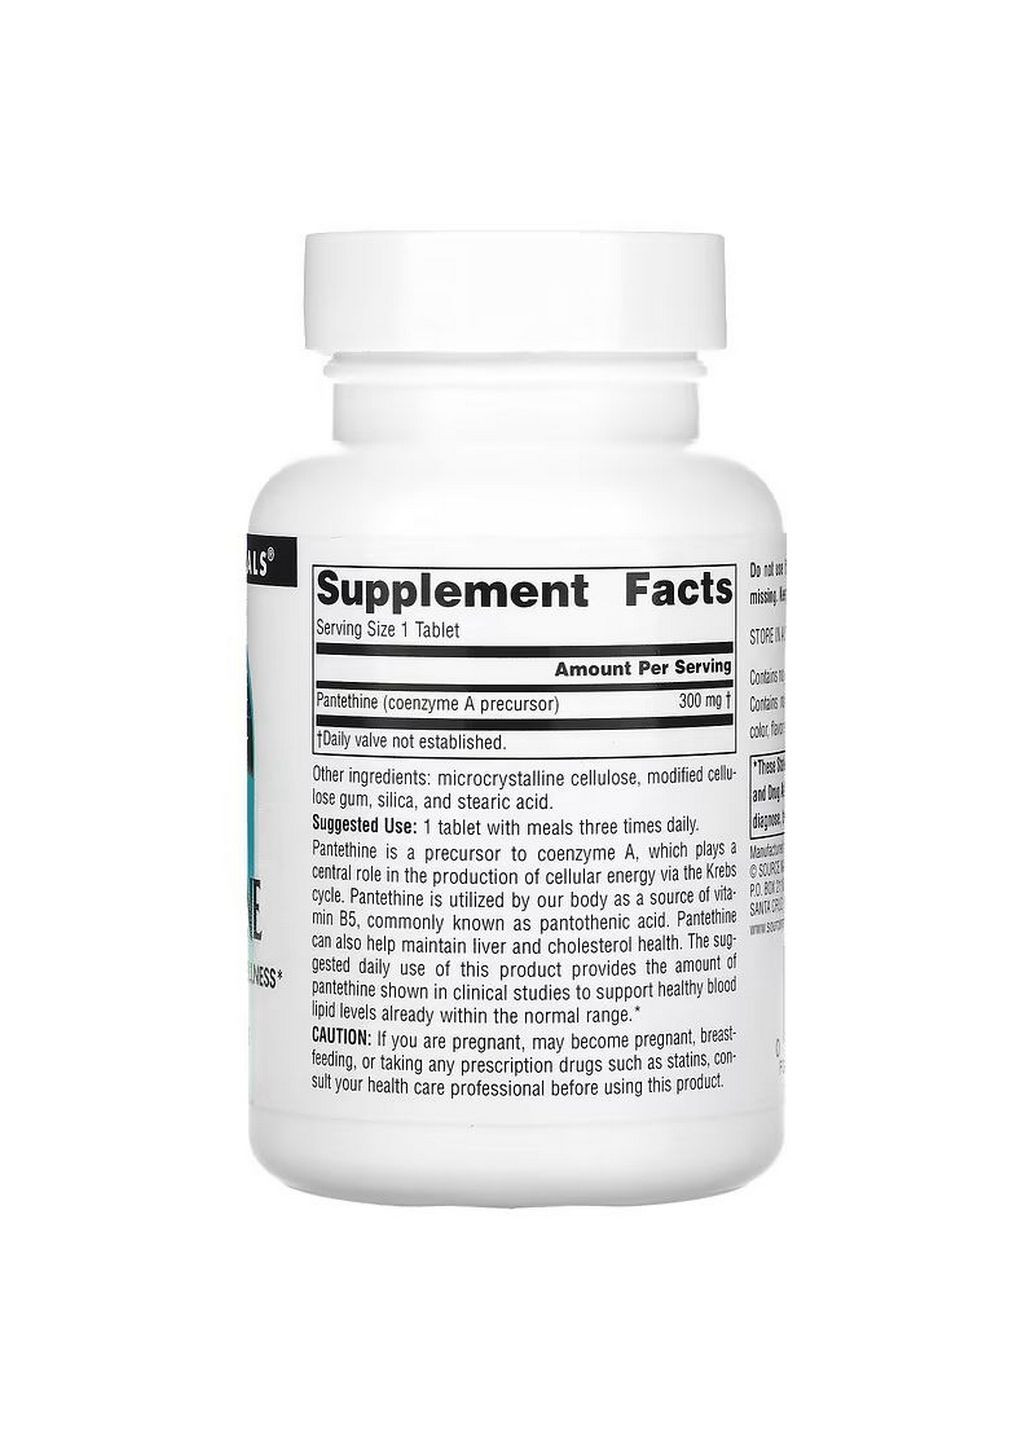 Вітаміни та мінерали Pantethine 300 mg, 90 таблеток Source Naturals (293483159)